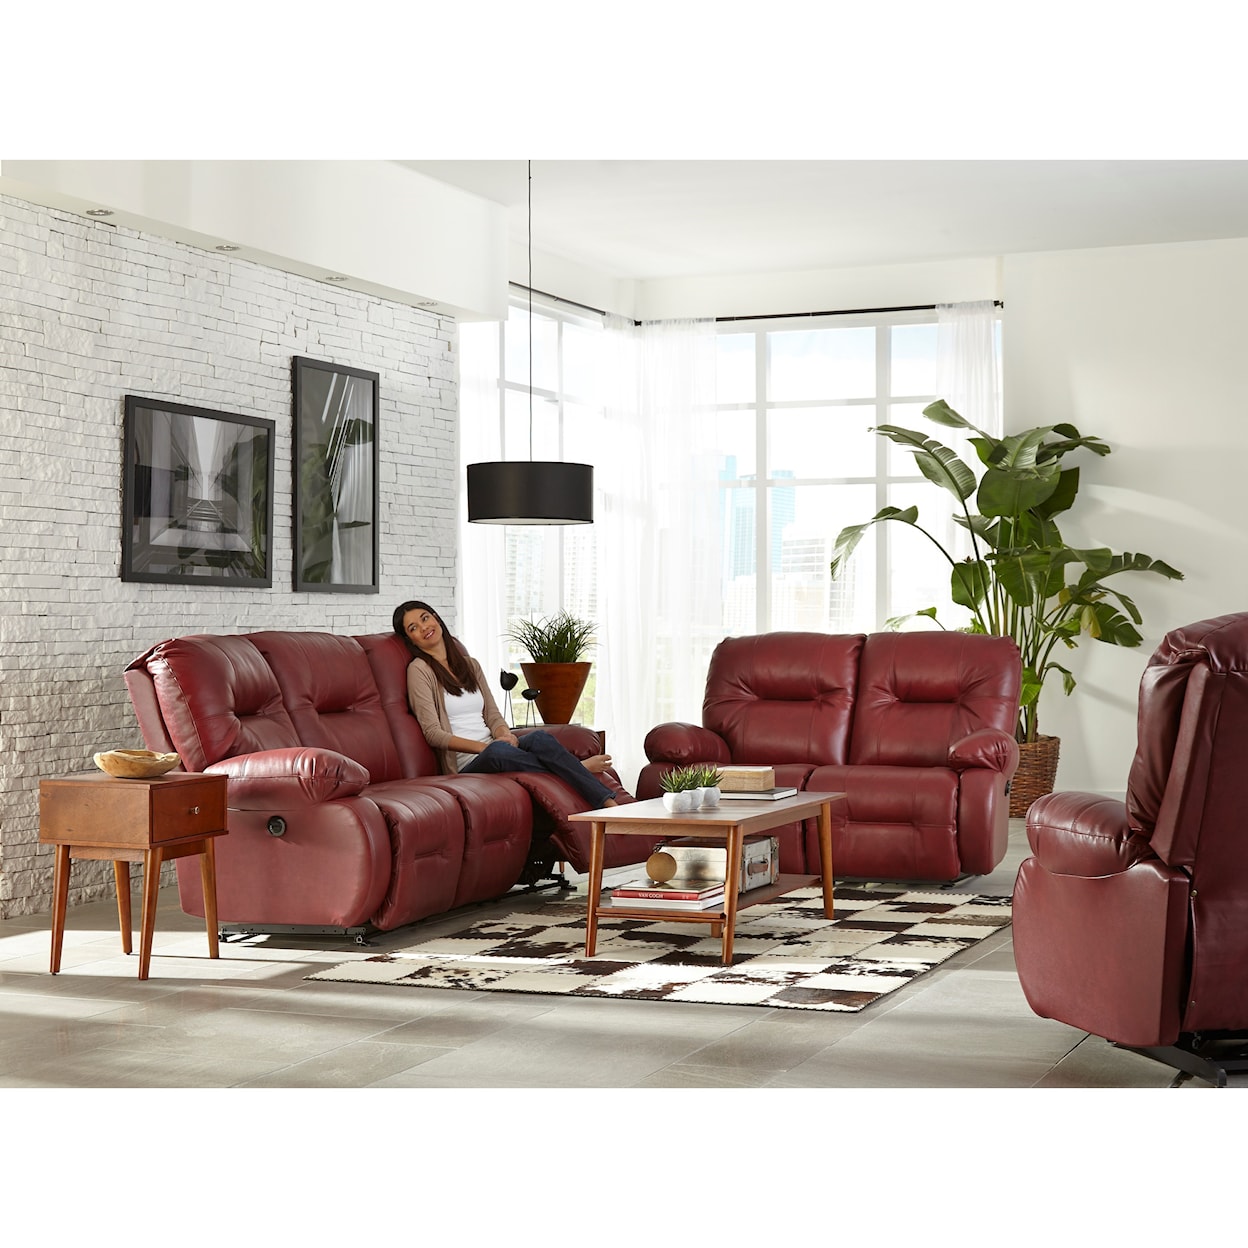 Best Home Furnishings Brinley 2 Power Reclining Sofa w/ Pwr Headrest